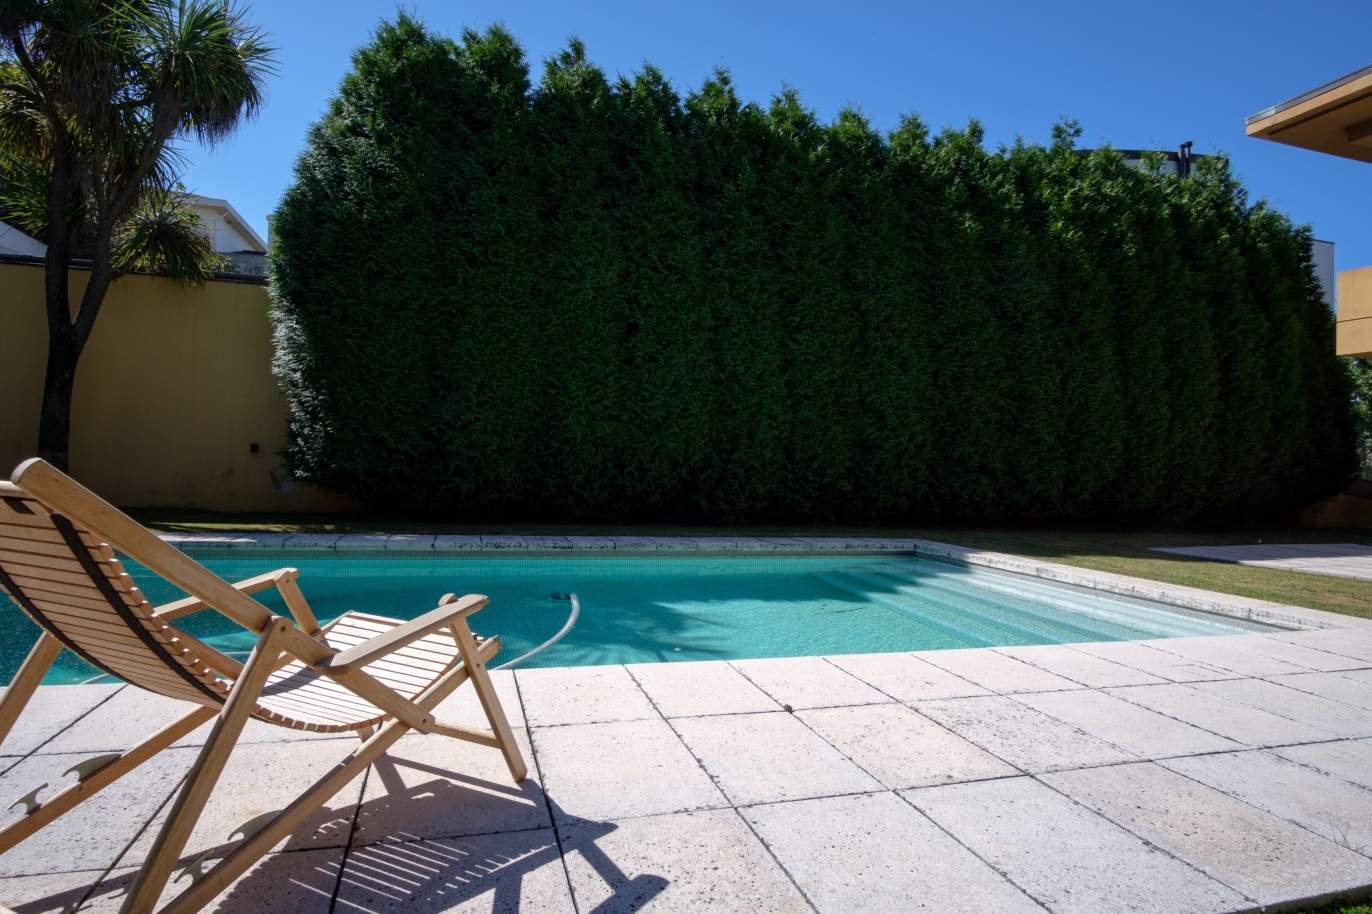 Venta de villa de 4 frentes con piscina y jardín, S. Mamede Infesta_118962